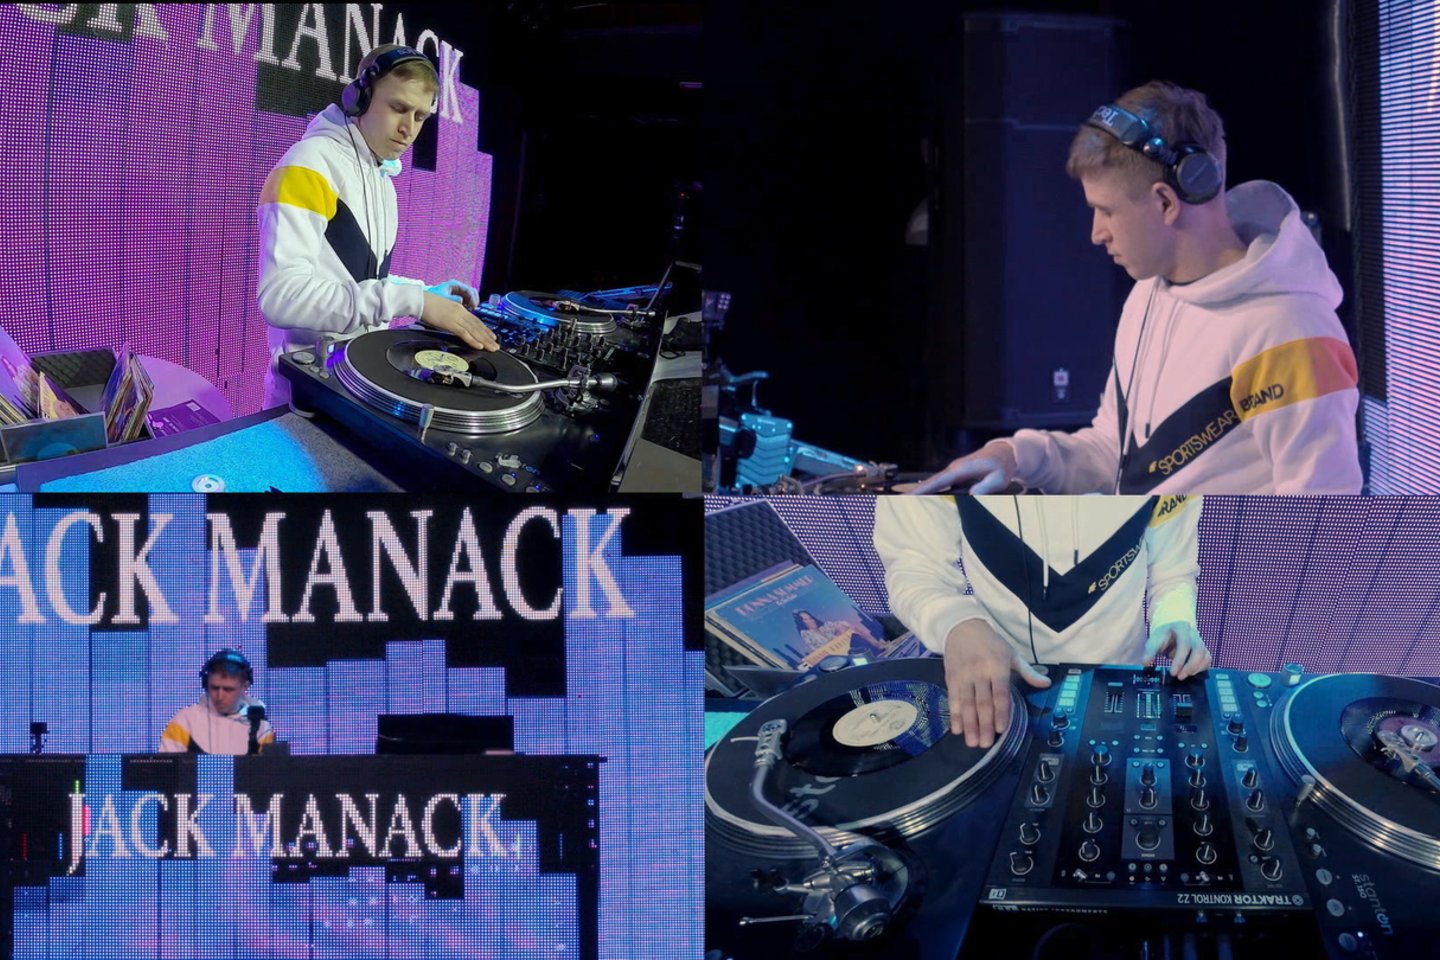  „DJ Jack Manack“.<br> Pr siuntėjų nuotr.